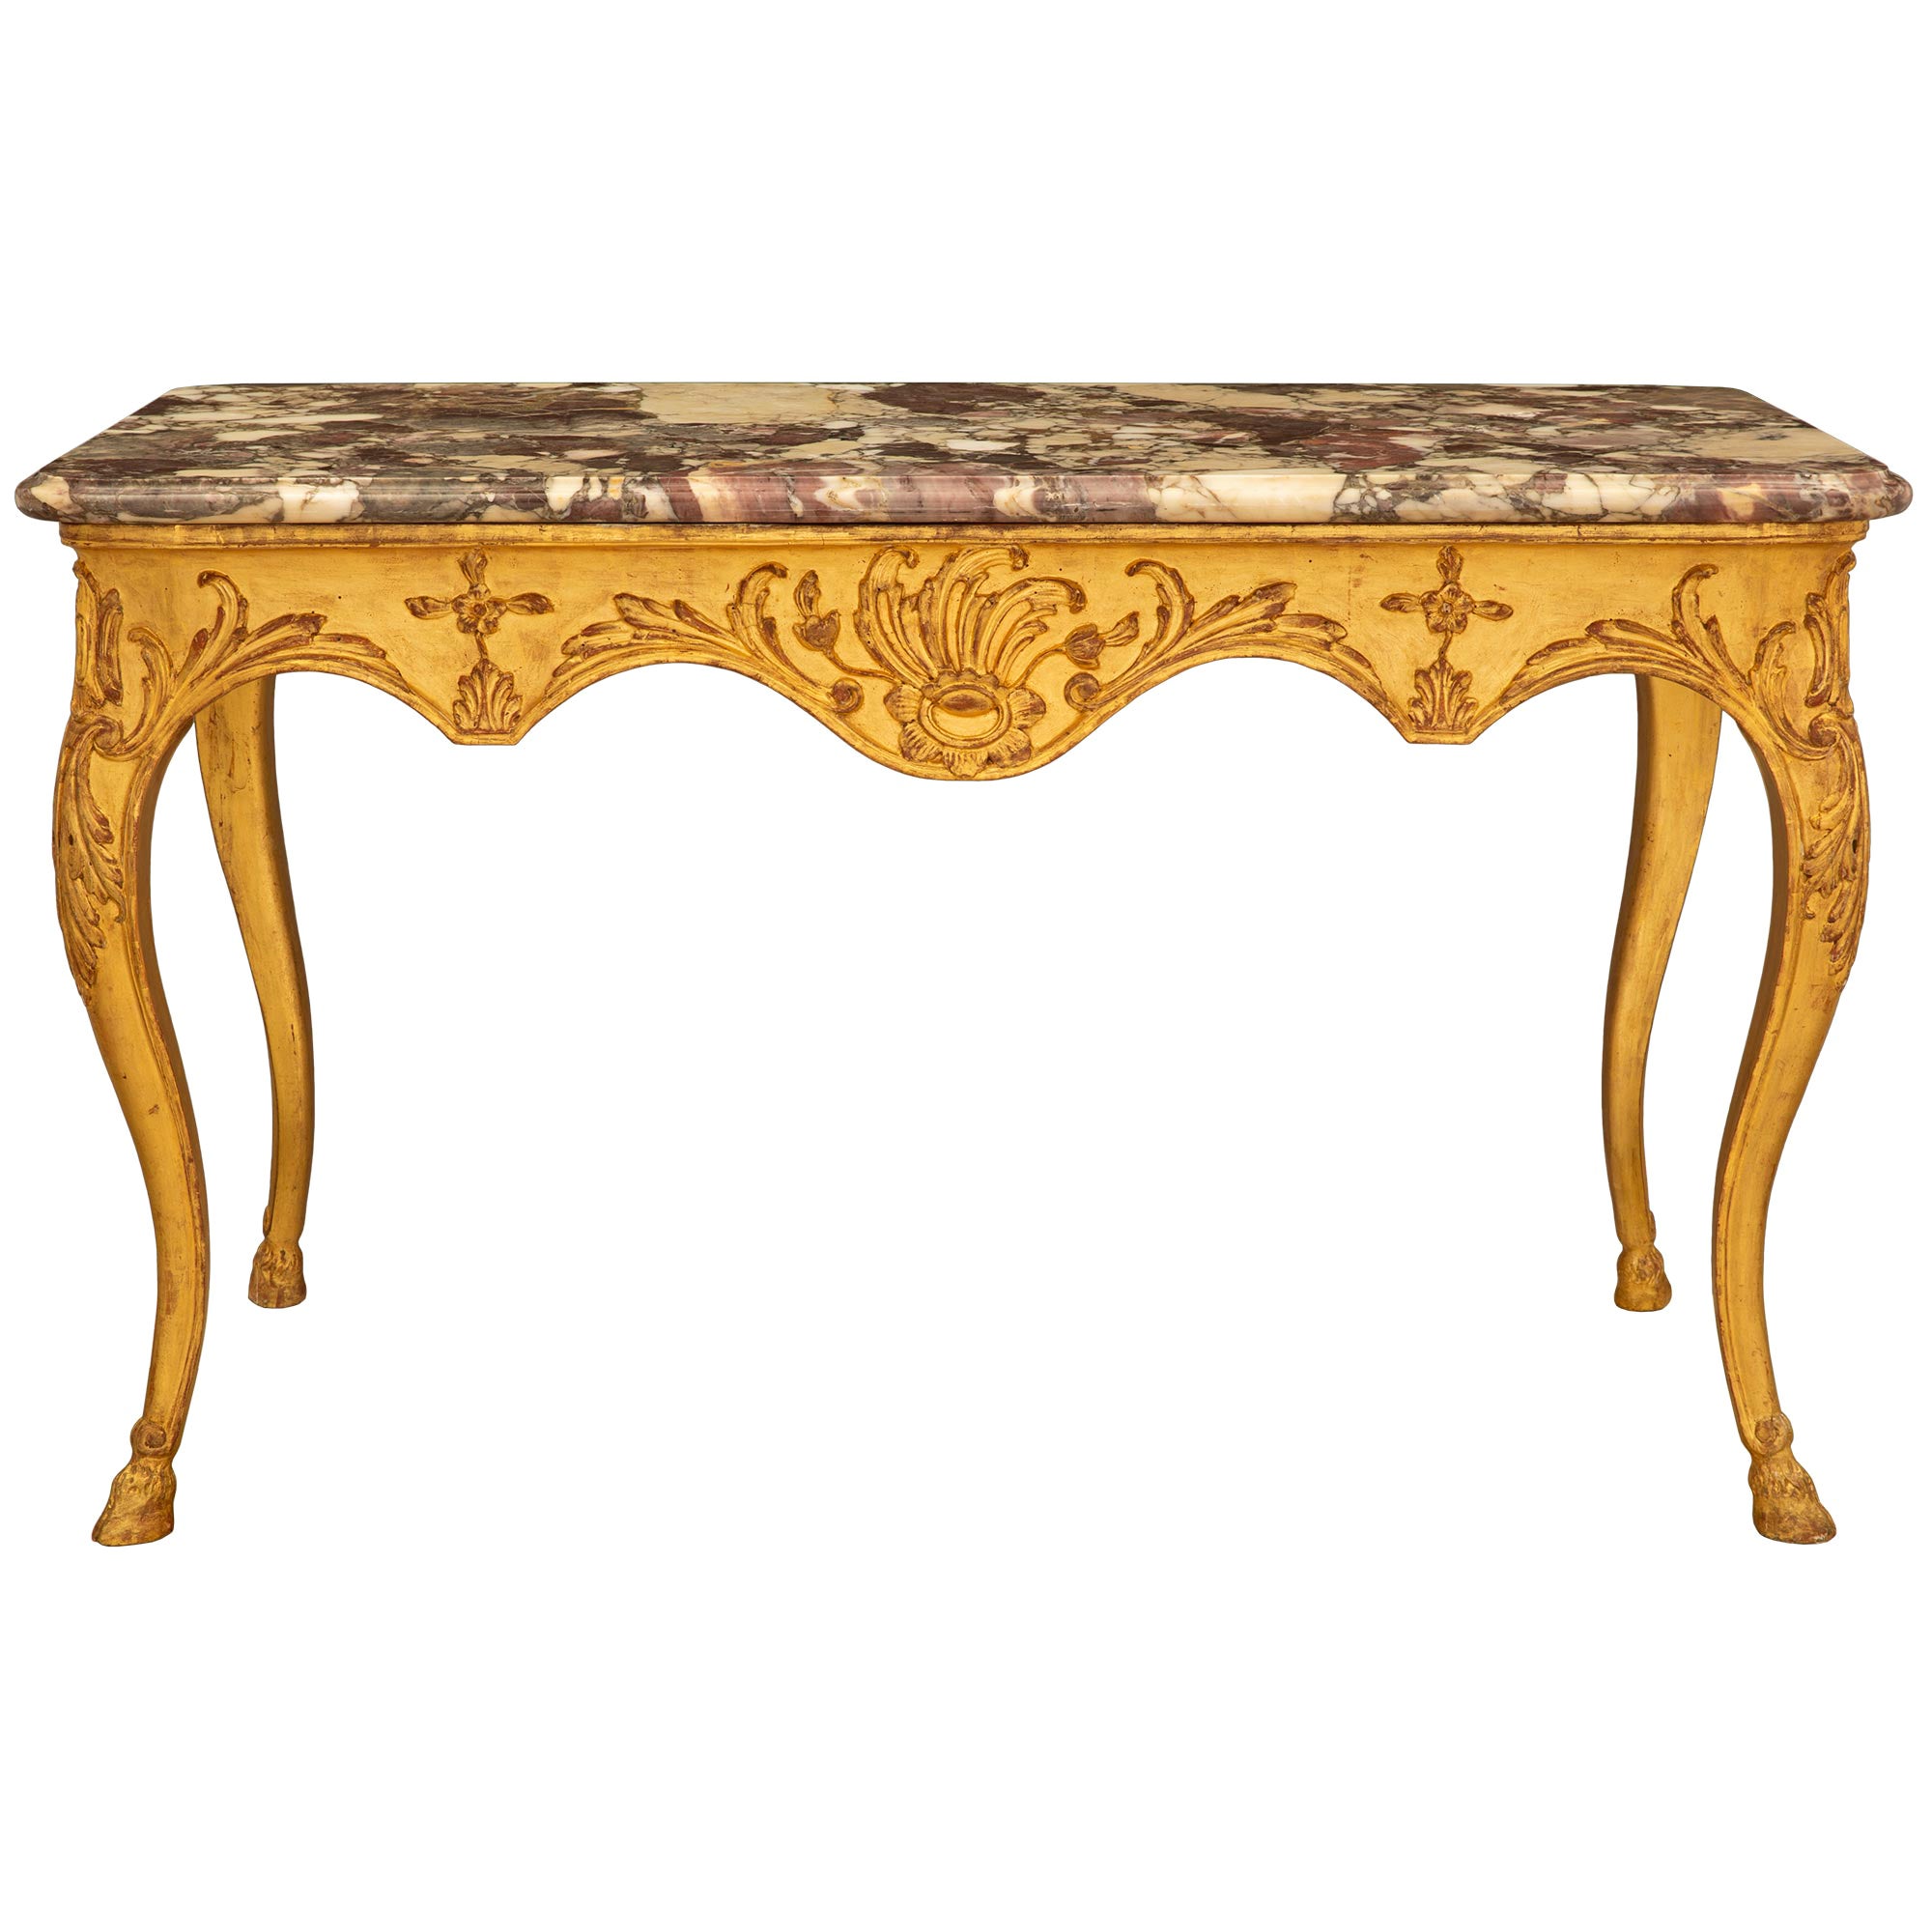 Table centrale italienne d'époque Louis XV du milieu du XVIIIe siècle en bois doré et marbre